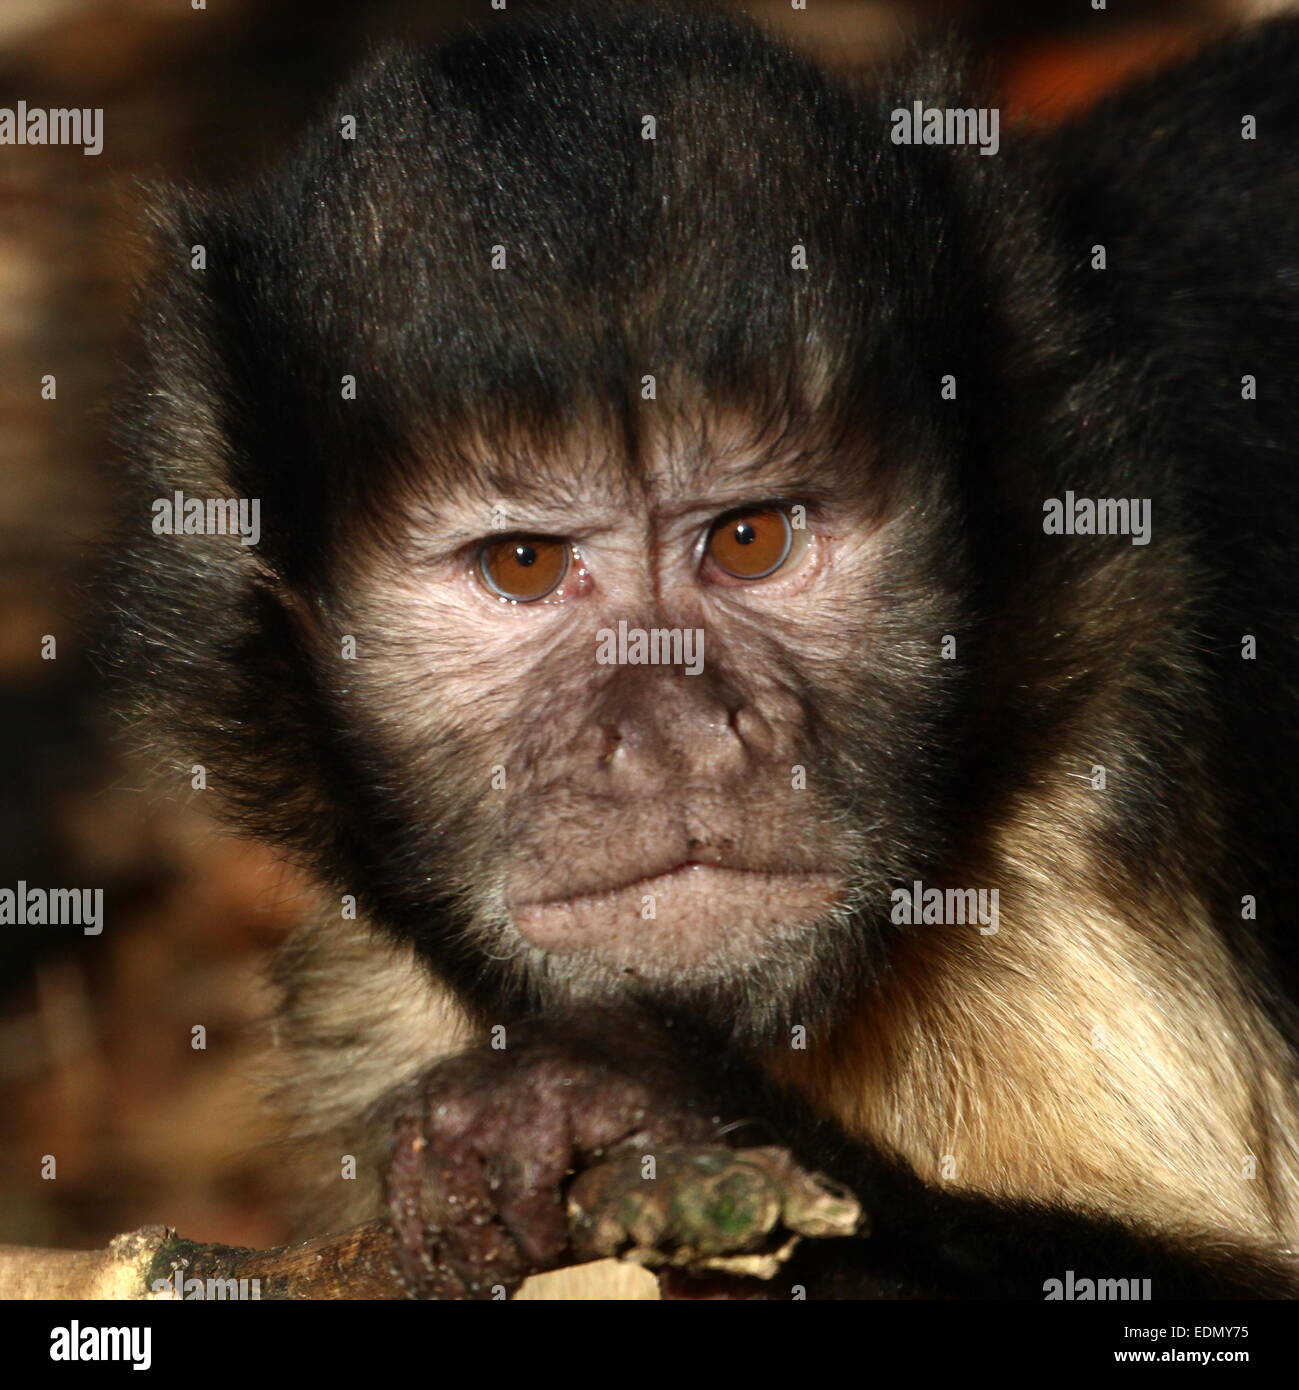 Macaco-prego-do-peito-amarelo (Cebus apella xanthosternos) - Ambientebrasil  - Ambientes